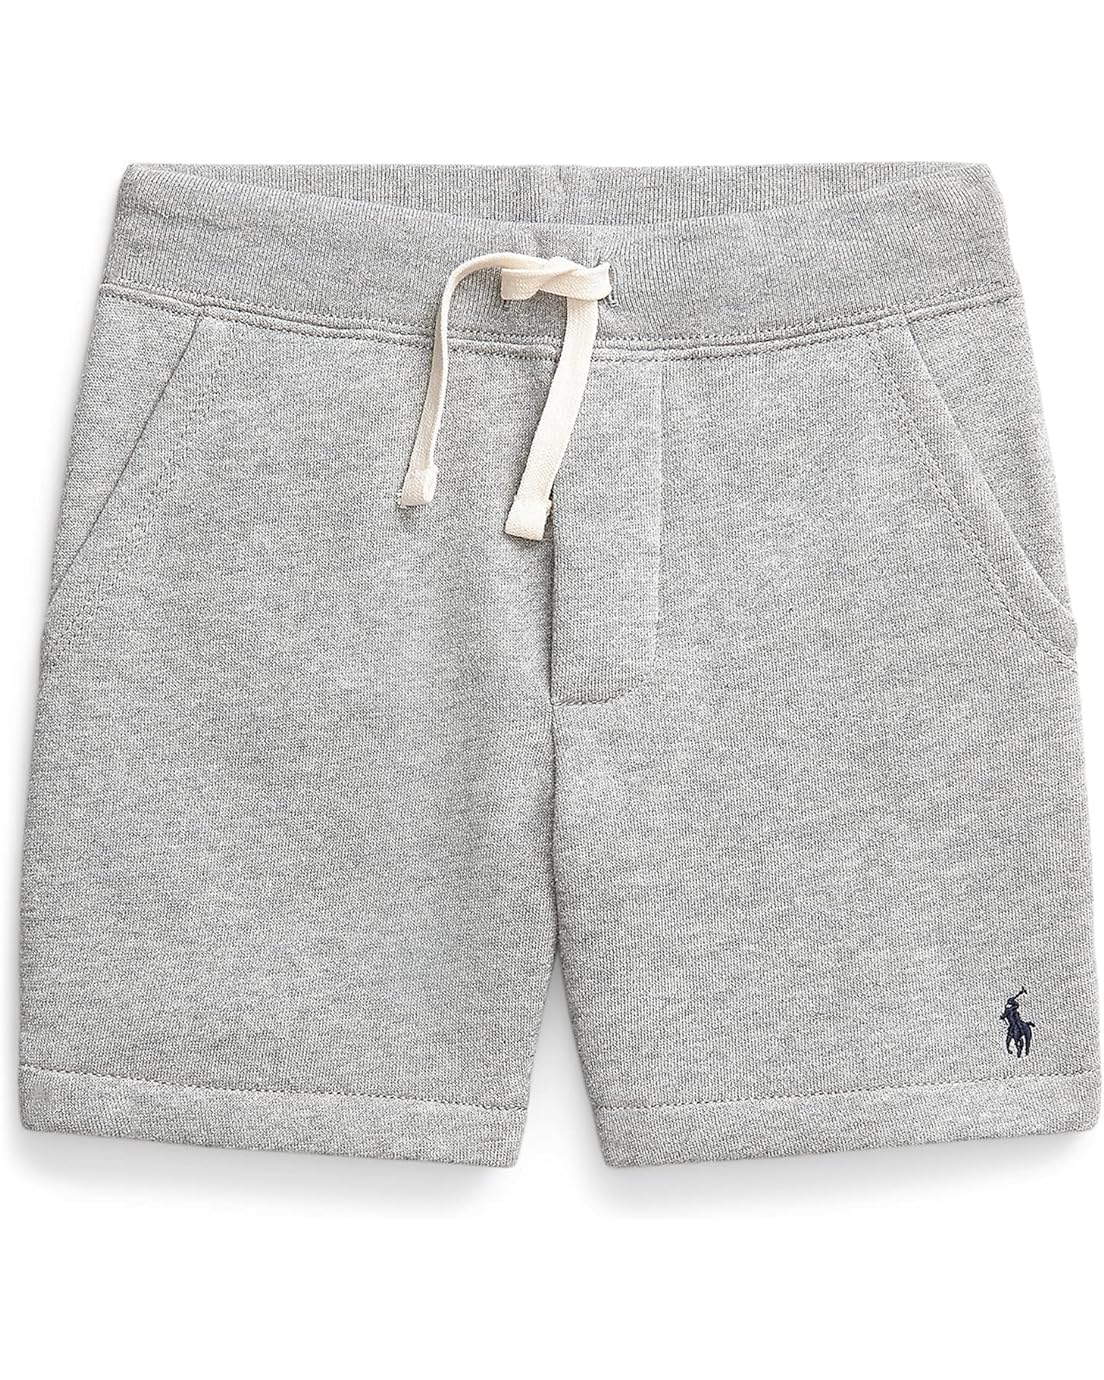 Polo Ralph Lauren Kids Cotton Blend Fleece Shorts (Little Kids)